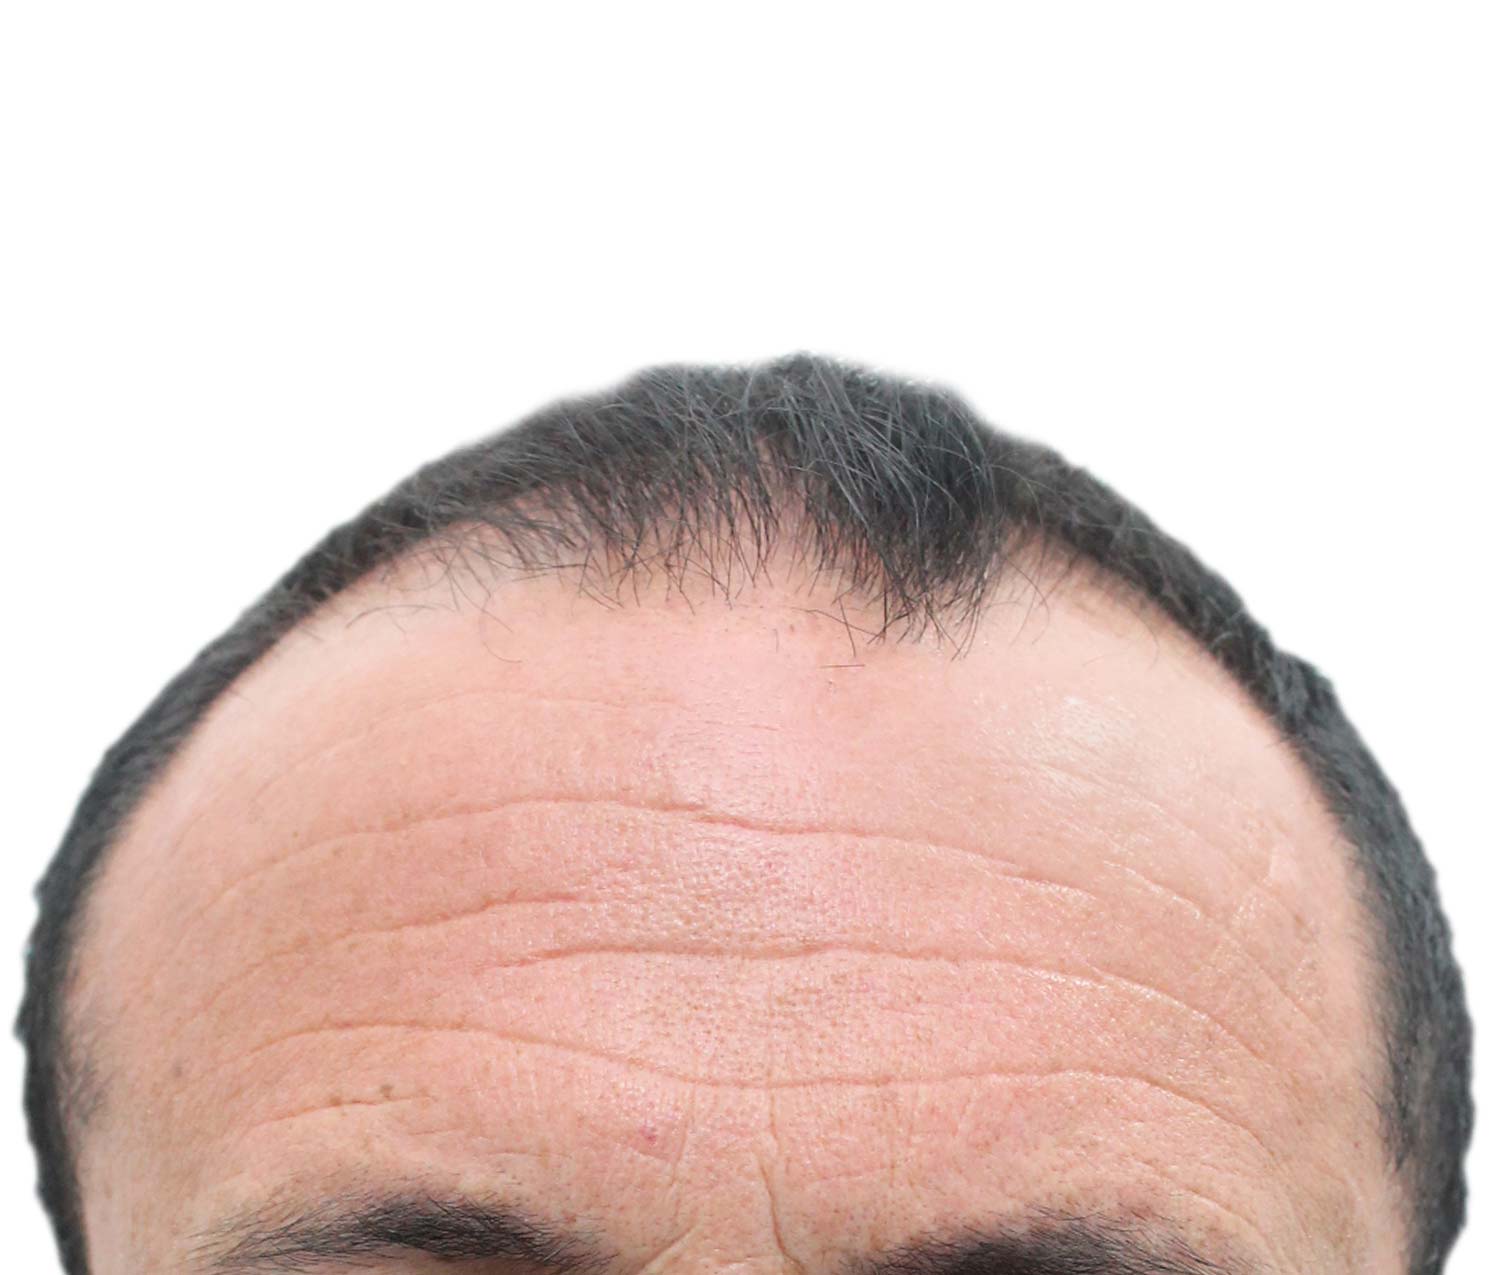 Antes del injerto de cabello | Paciente real. Los resultados individuales pueden variar.